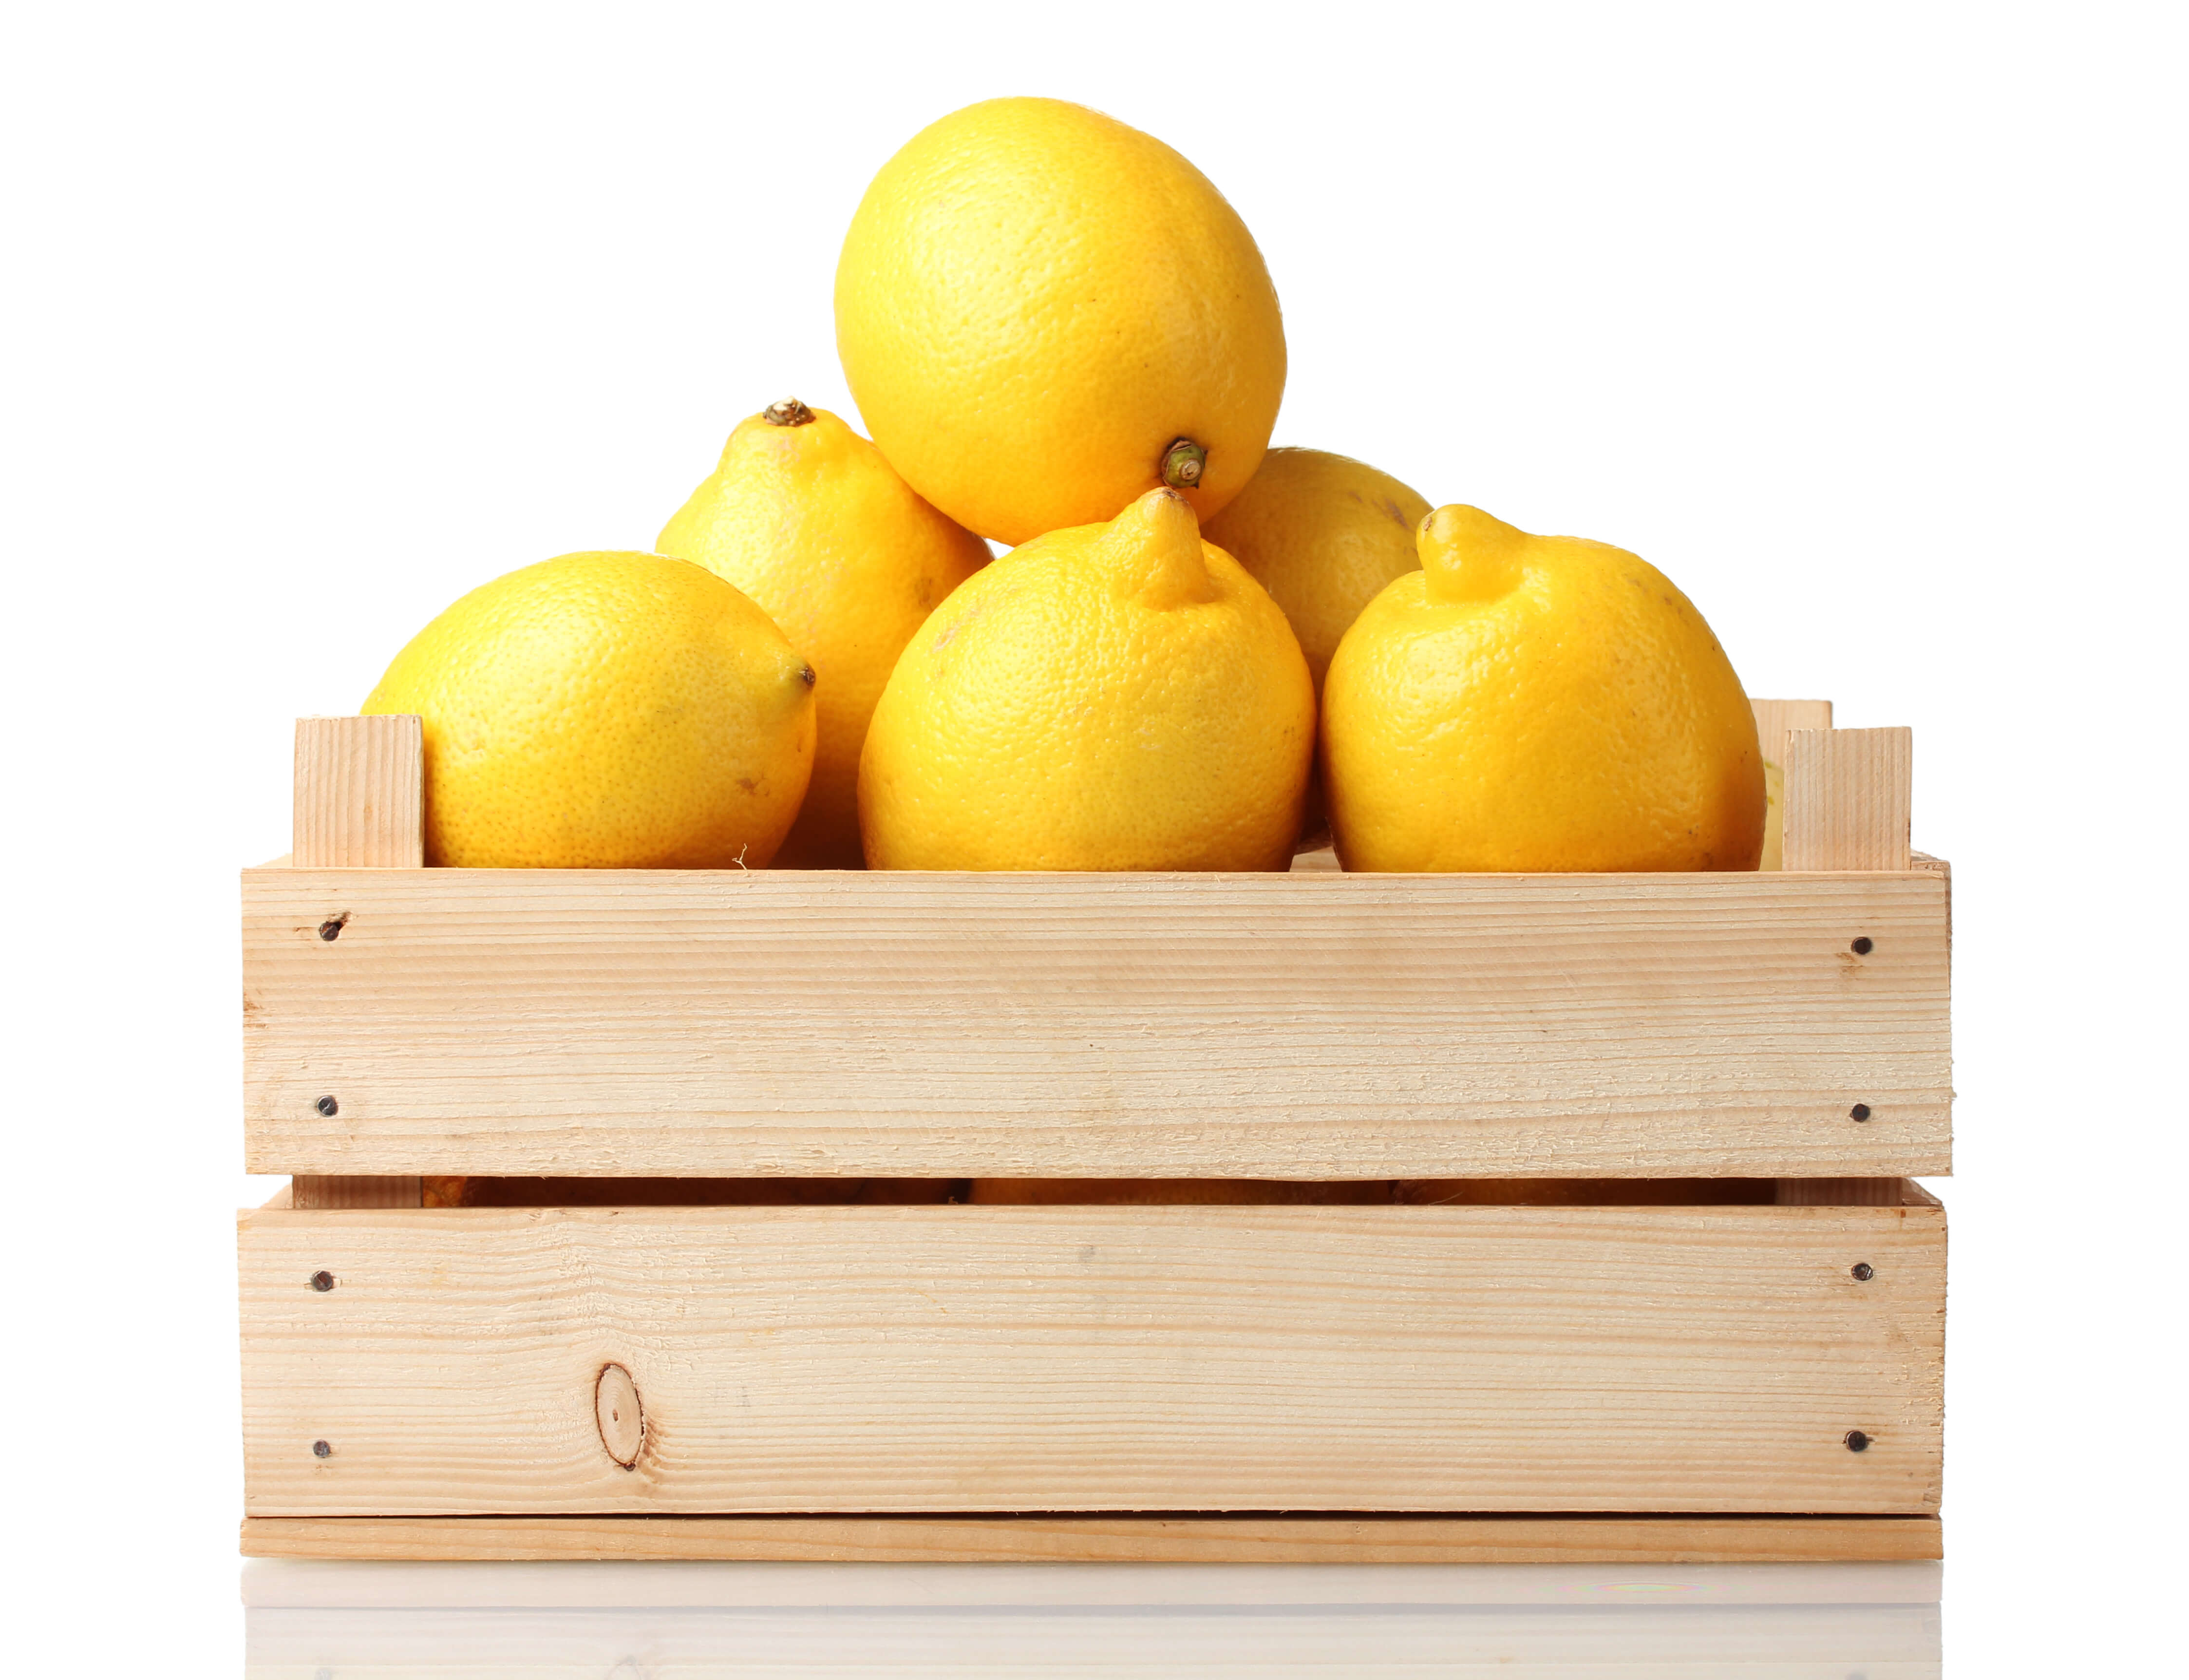 Lemons for health